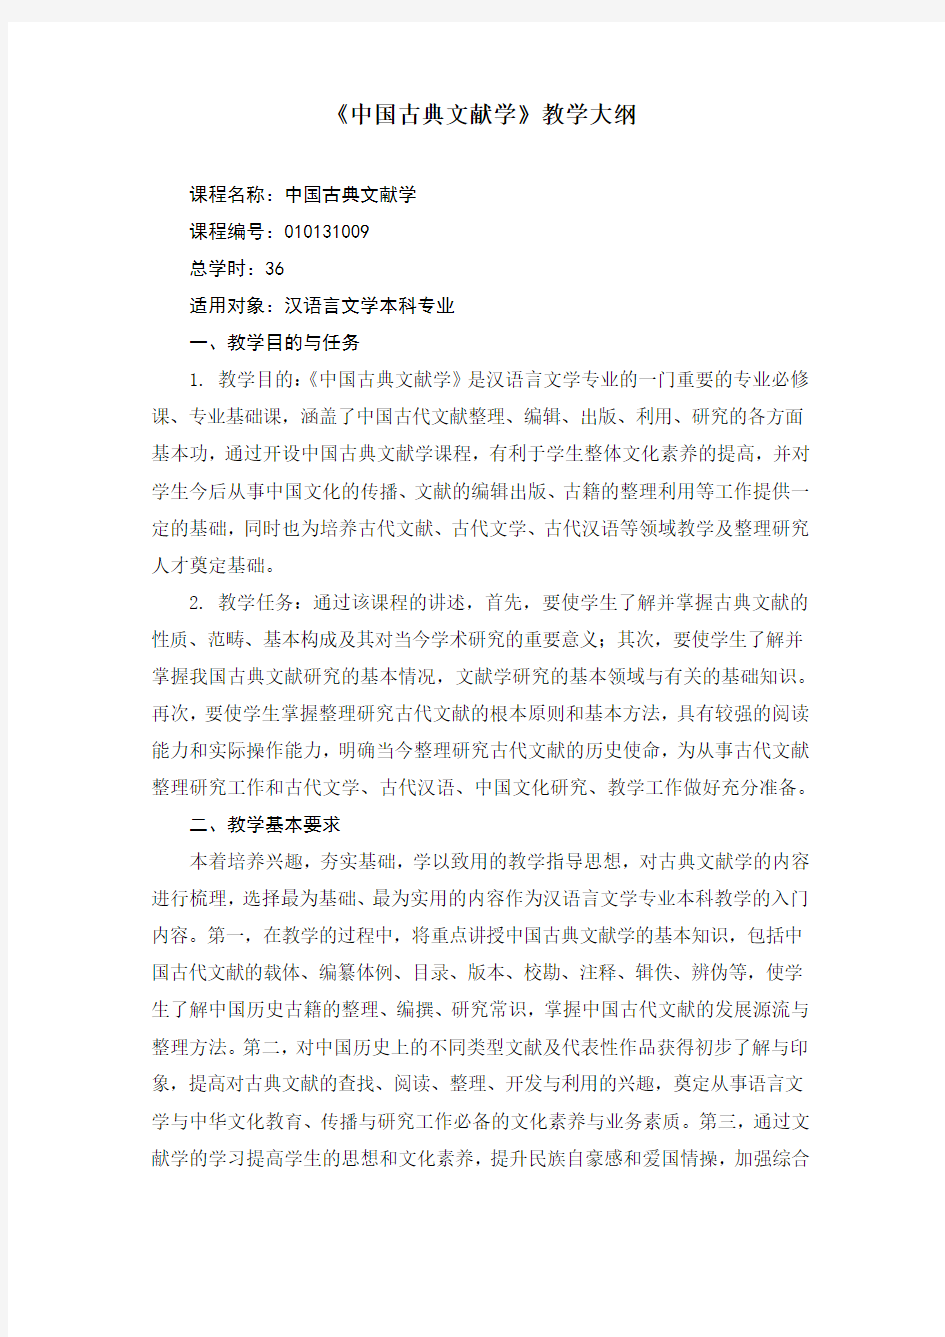 汉语言文学专业《中国古典文献学》教学大纲复习过程